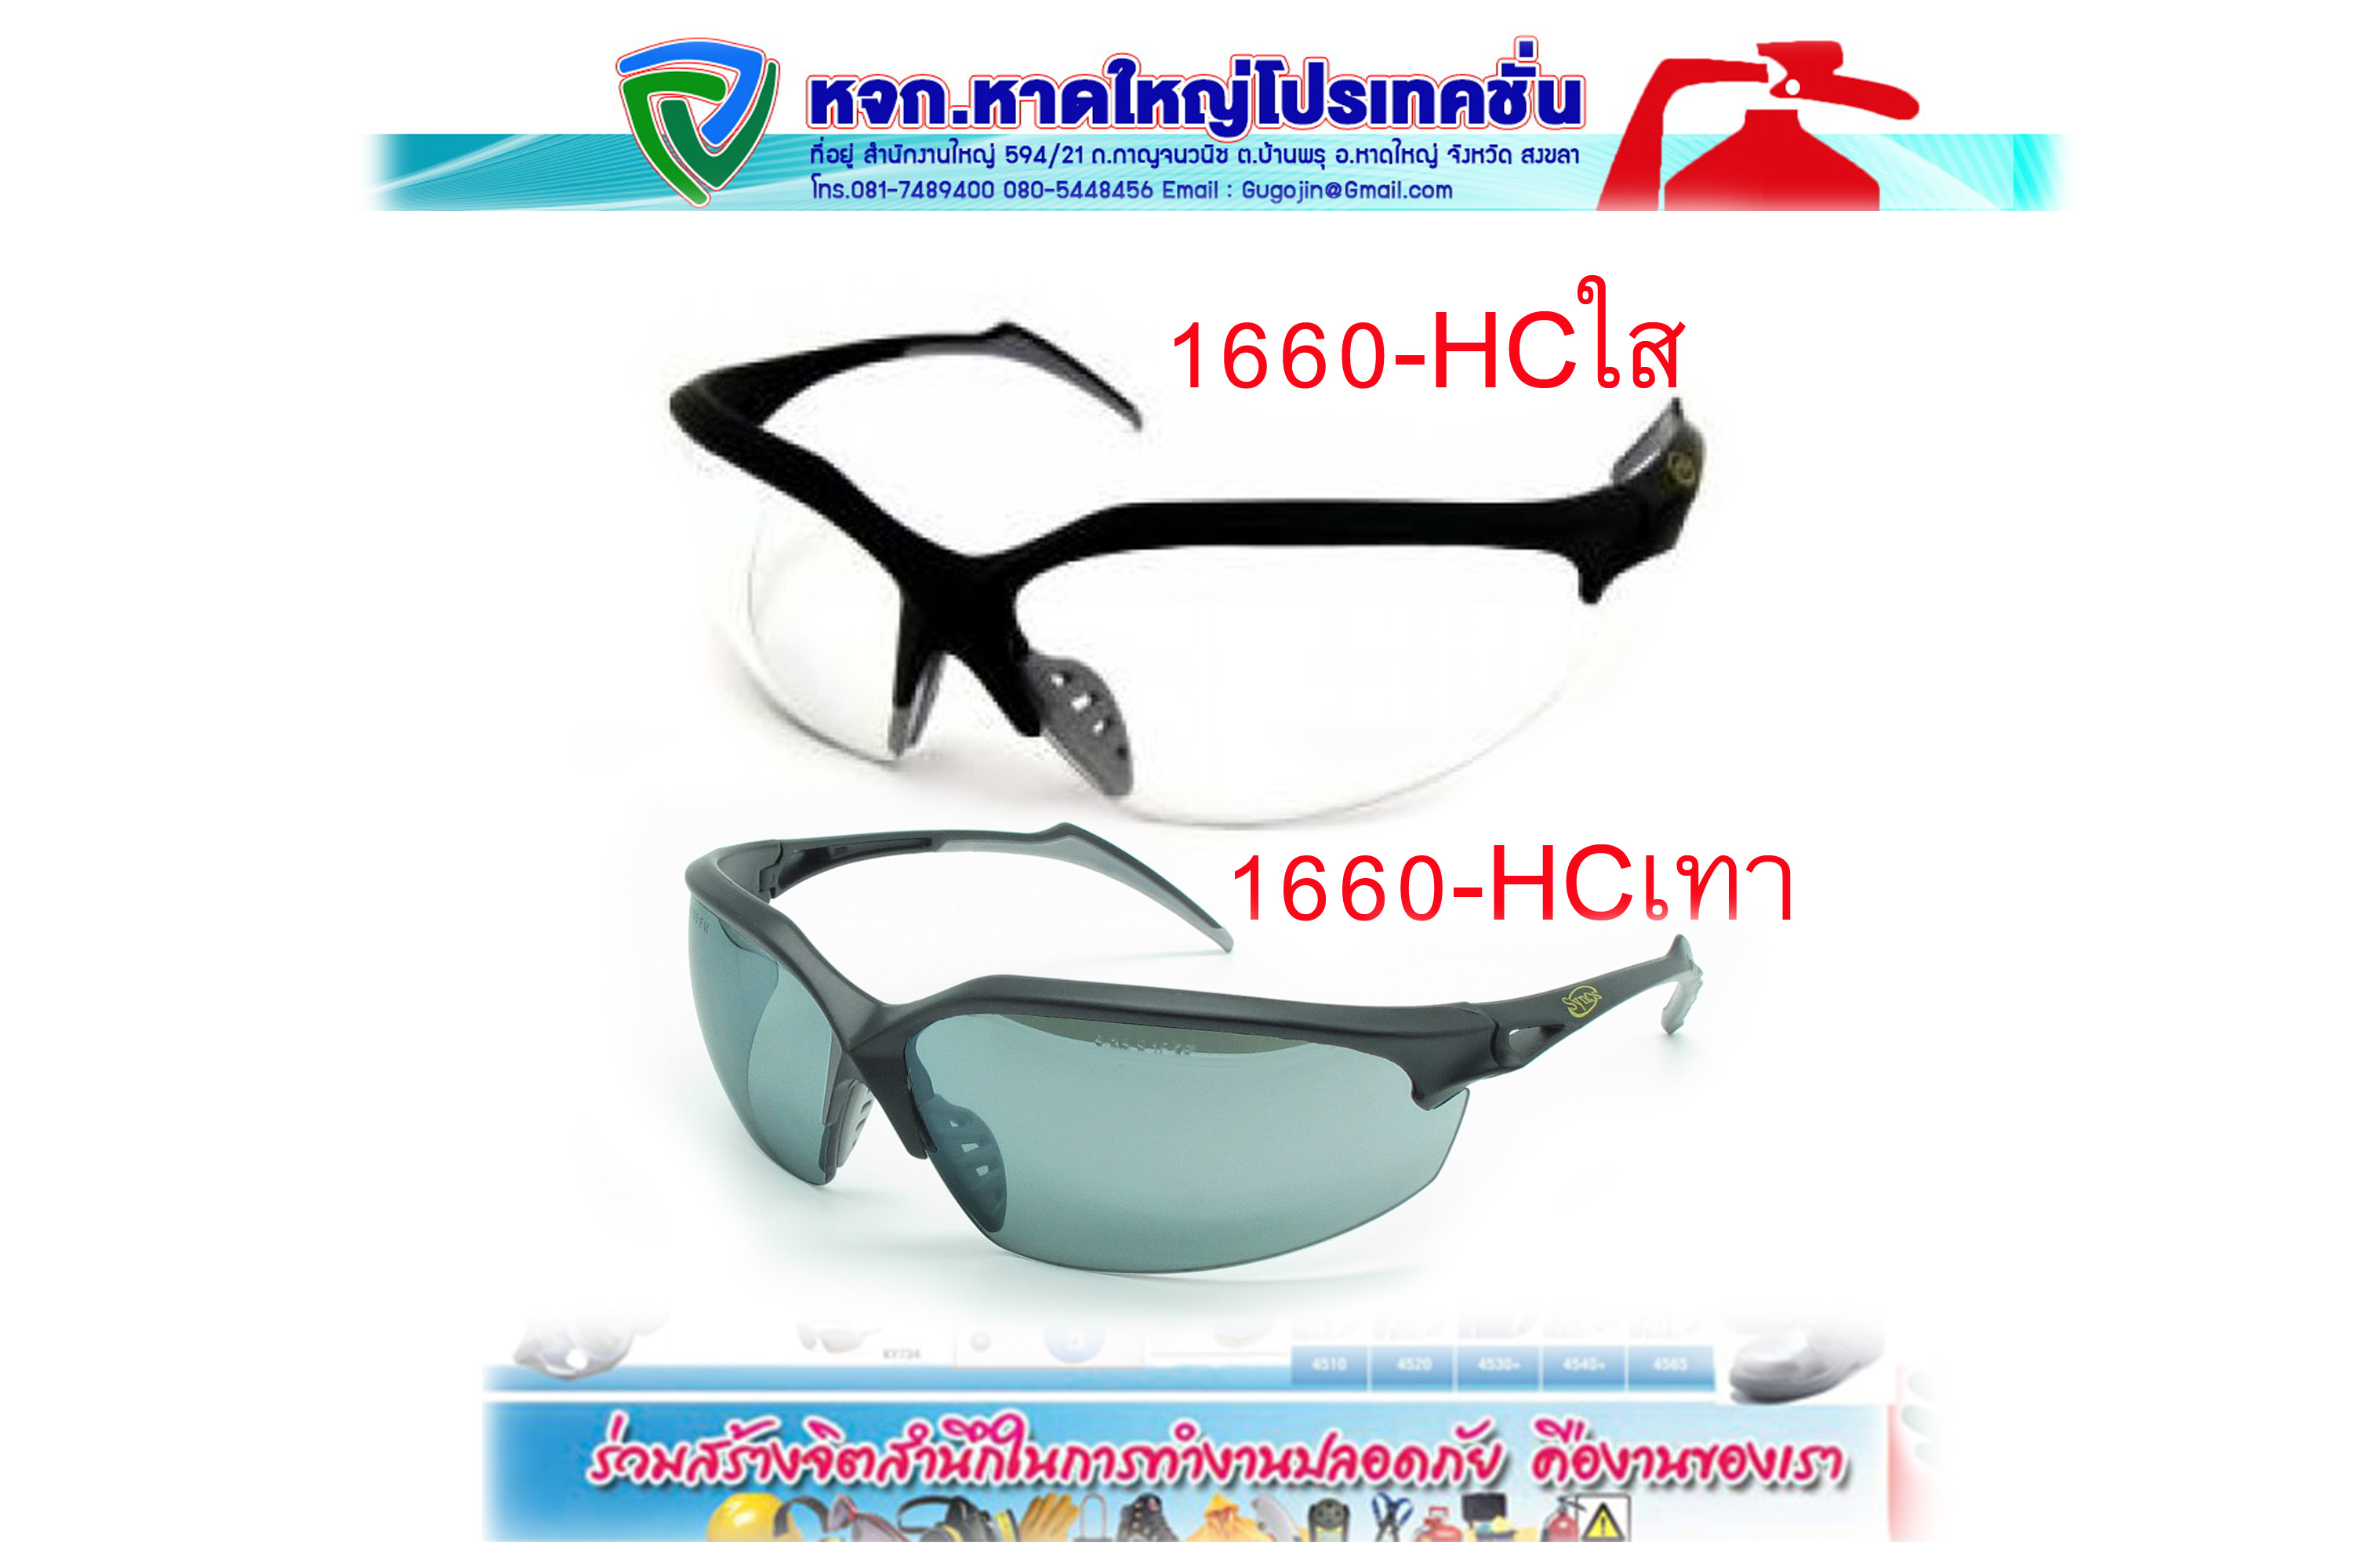 แว่นตานิรภัย synoy 1660-HC